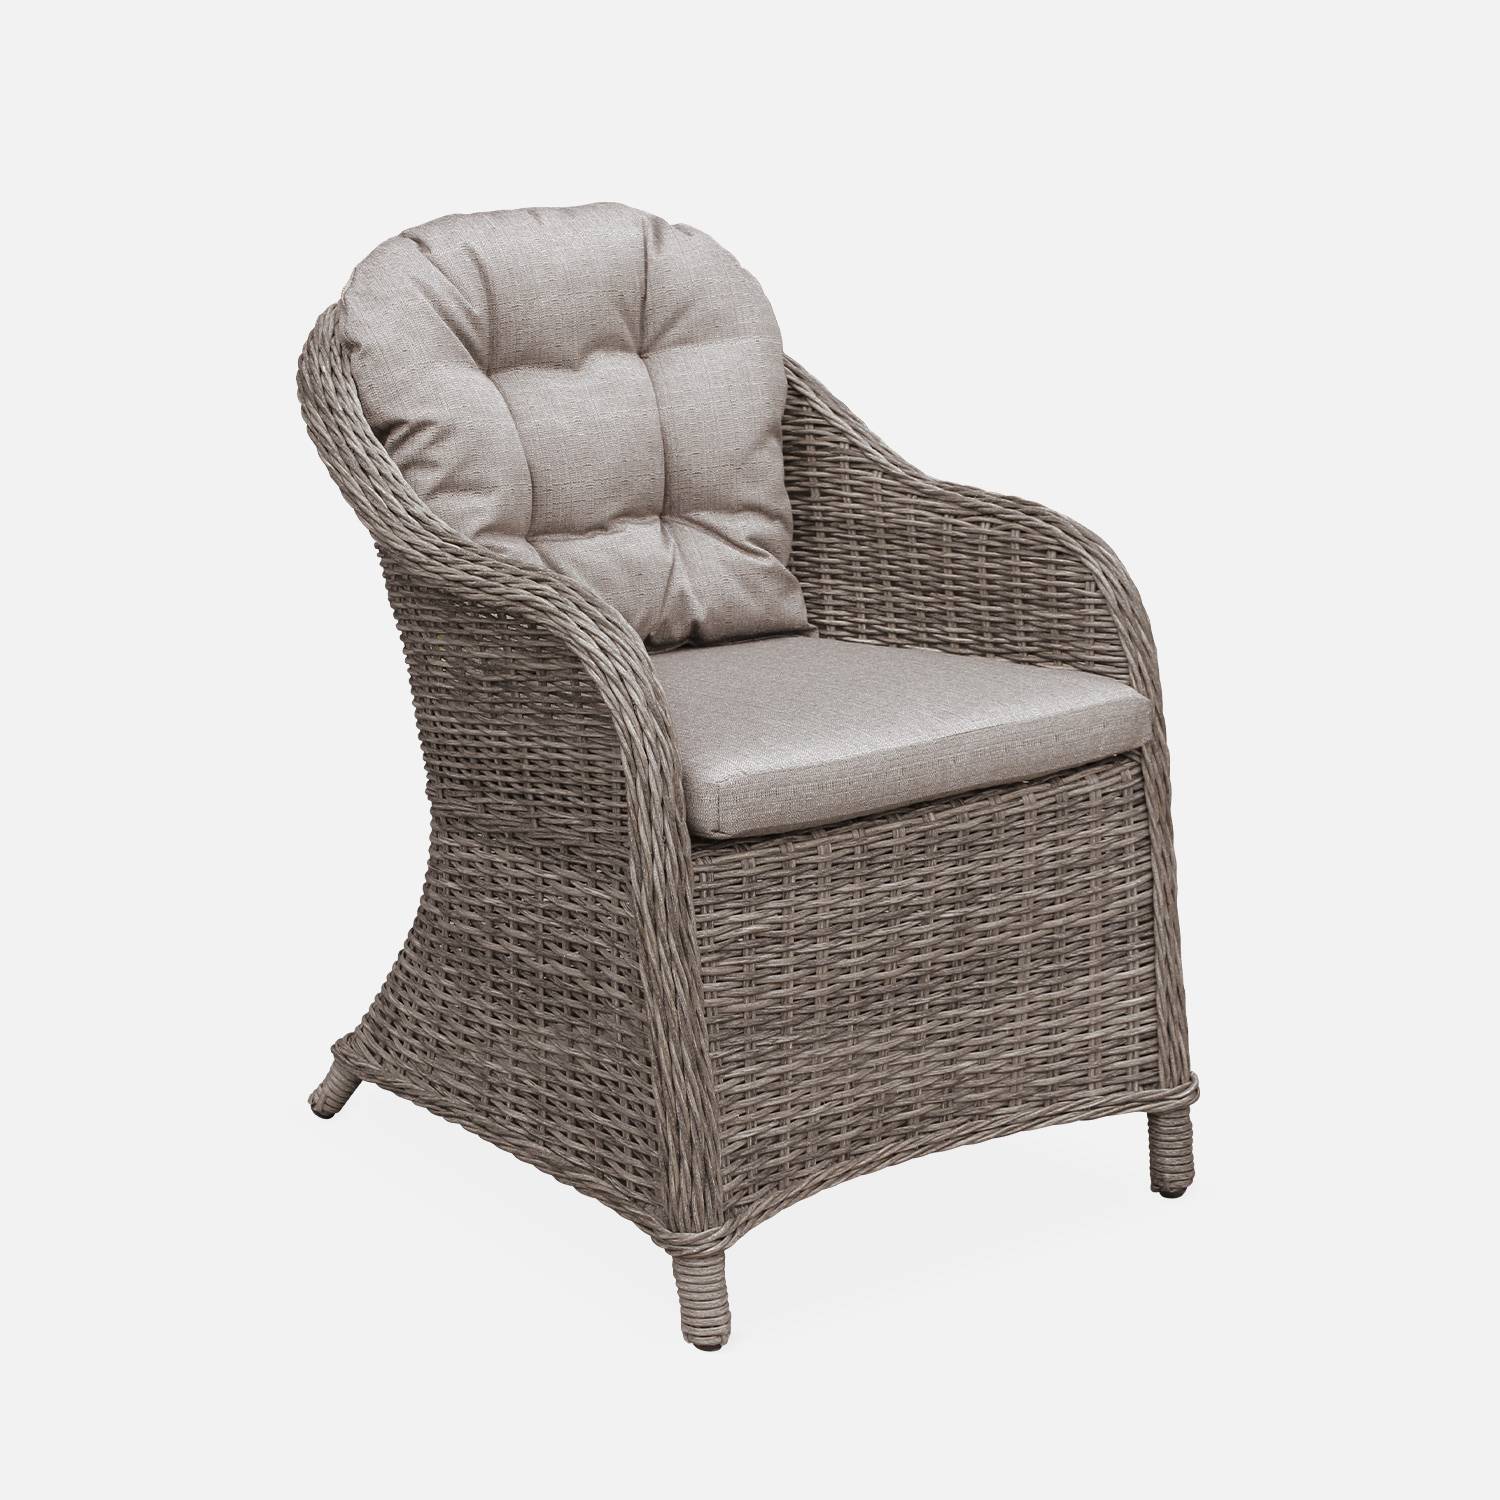 Set mit 2 runden Sesseln aus Kunststoffrattan - Lecco Grau - beigefarbene Kissen, Stühle, Aluminiumgestell Photo2